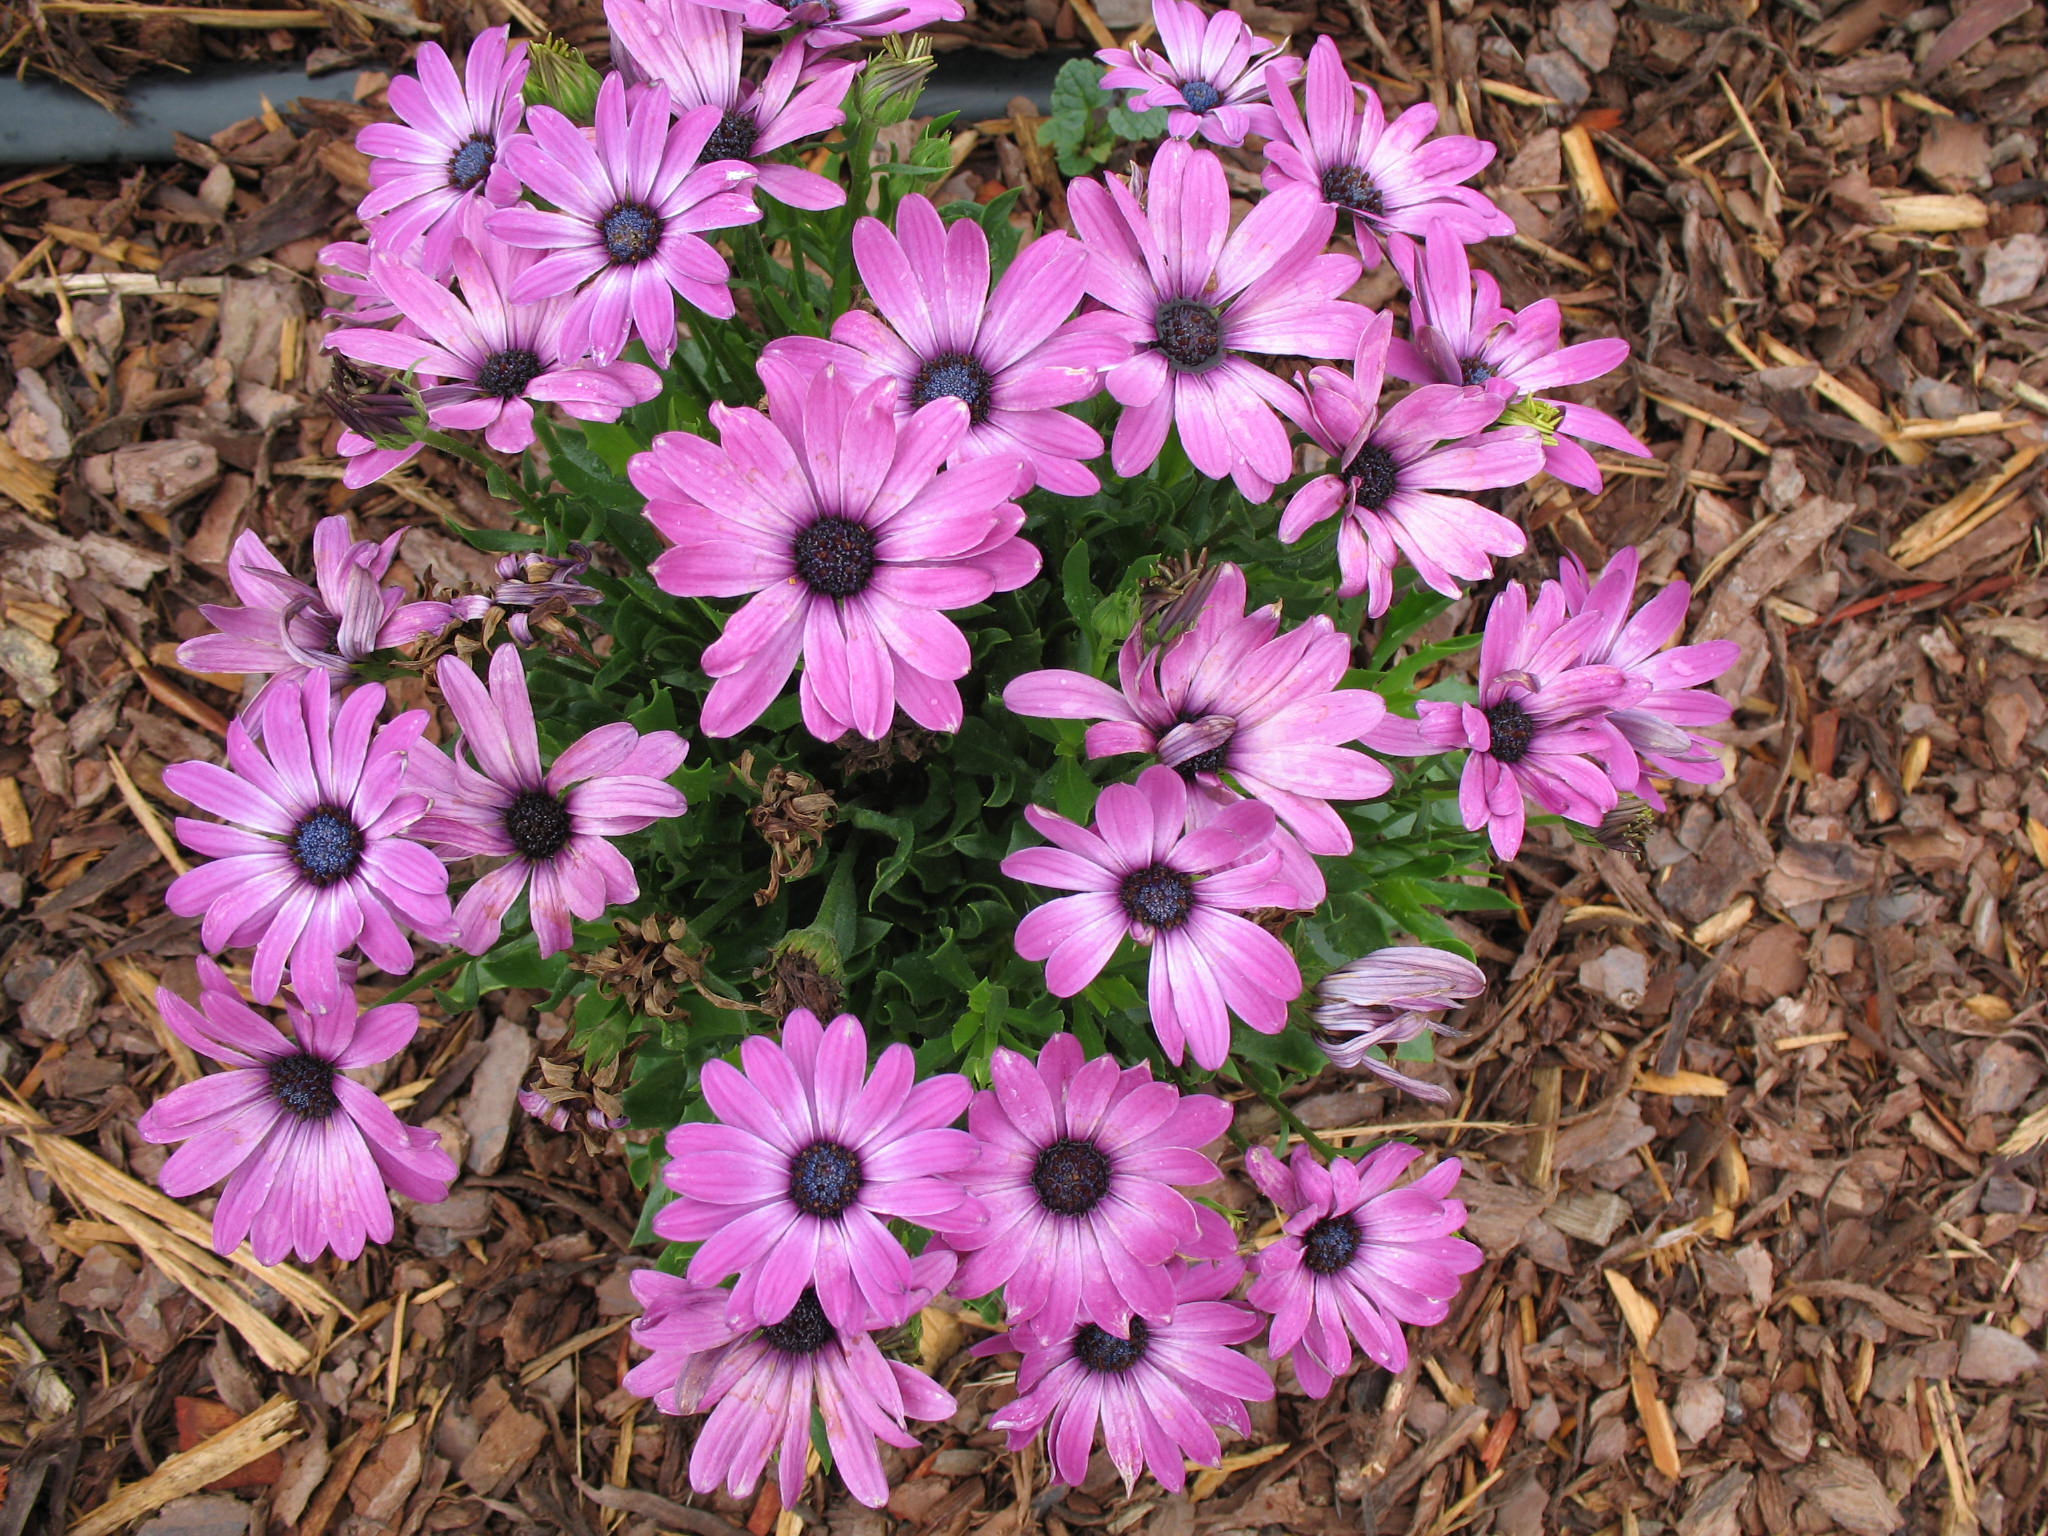 Osteospermum 'Tradewinds Purple Bicolor' / Trade Winds Purple Bicolor Daisy